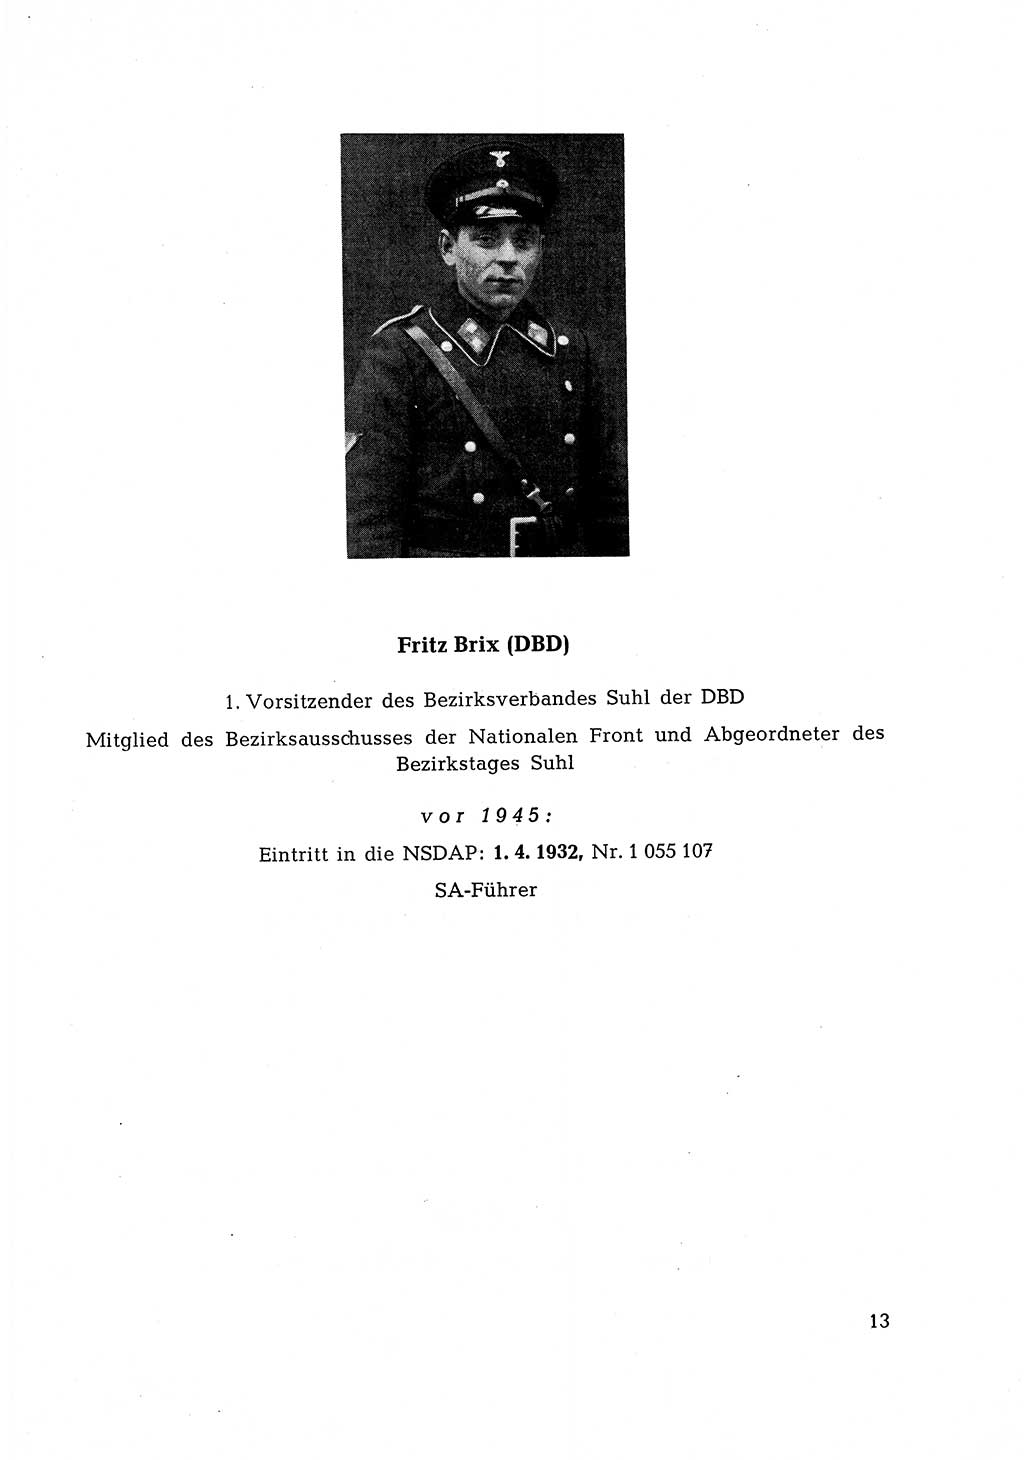 Ehemalige Nationalsozialisten in Pankows Diensten [Deutsche Demokratische Republik (DDR)] 1965, Seite 13 (Ehem. Nat.-Soz. DDR 1965, S. 13)